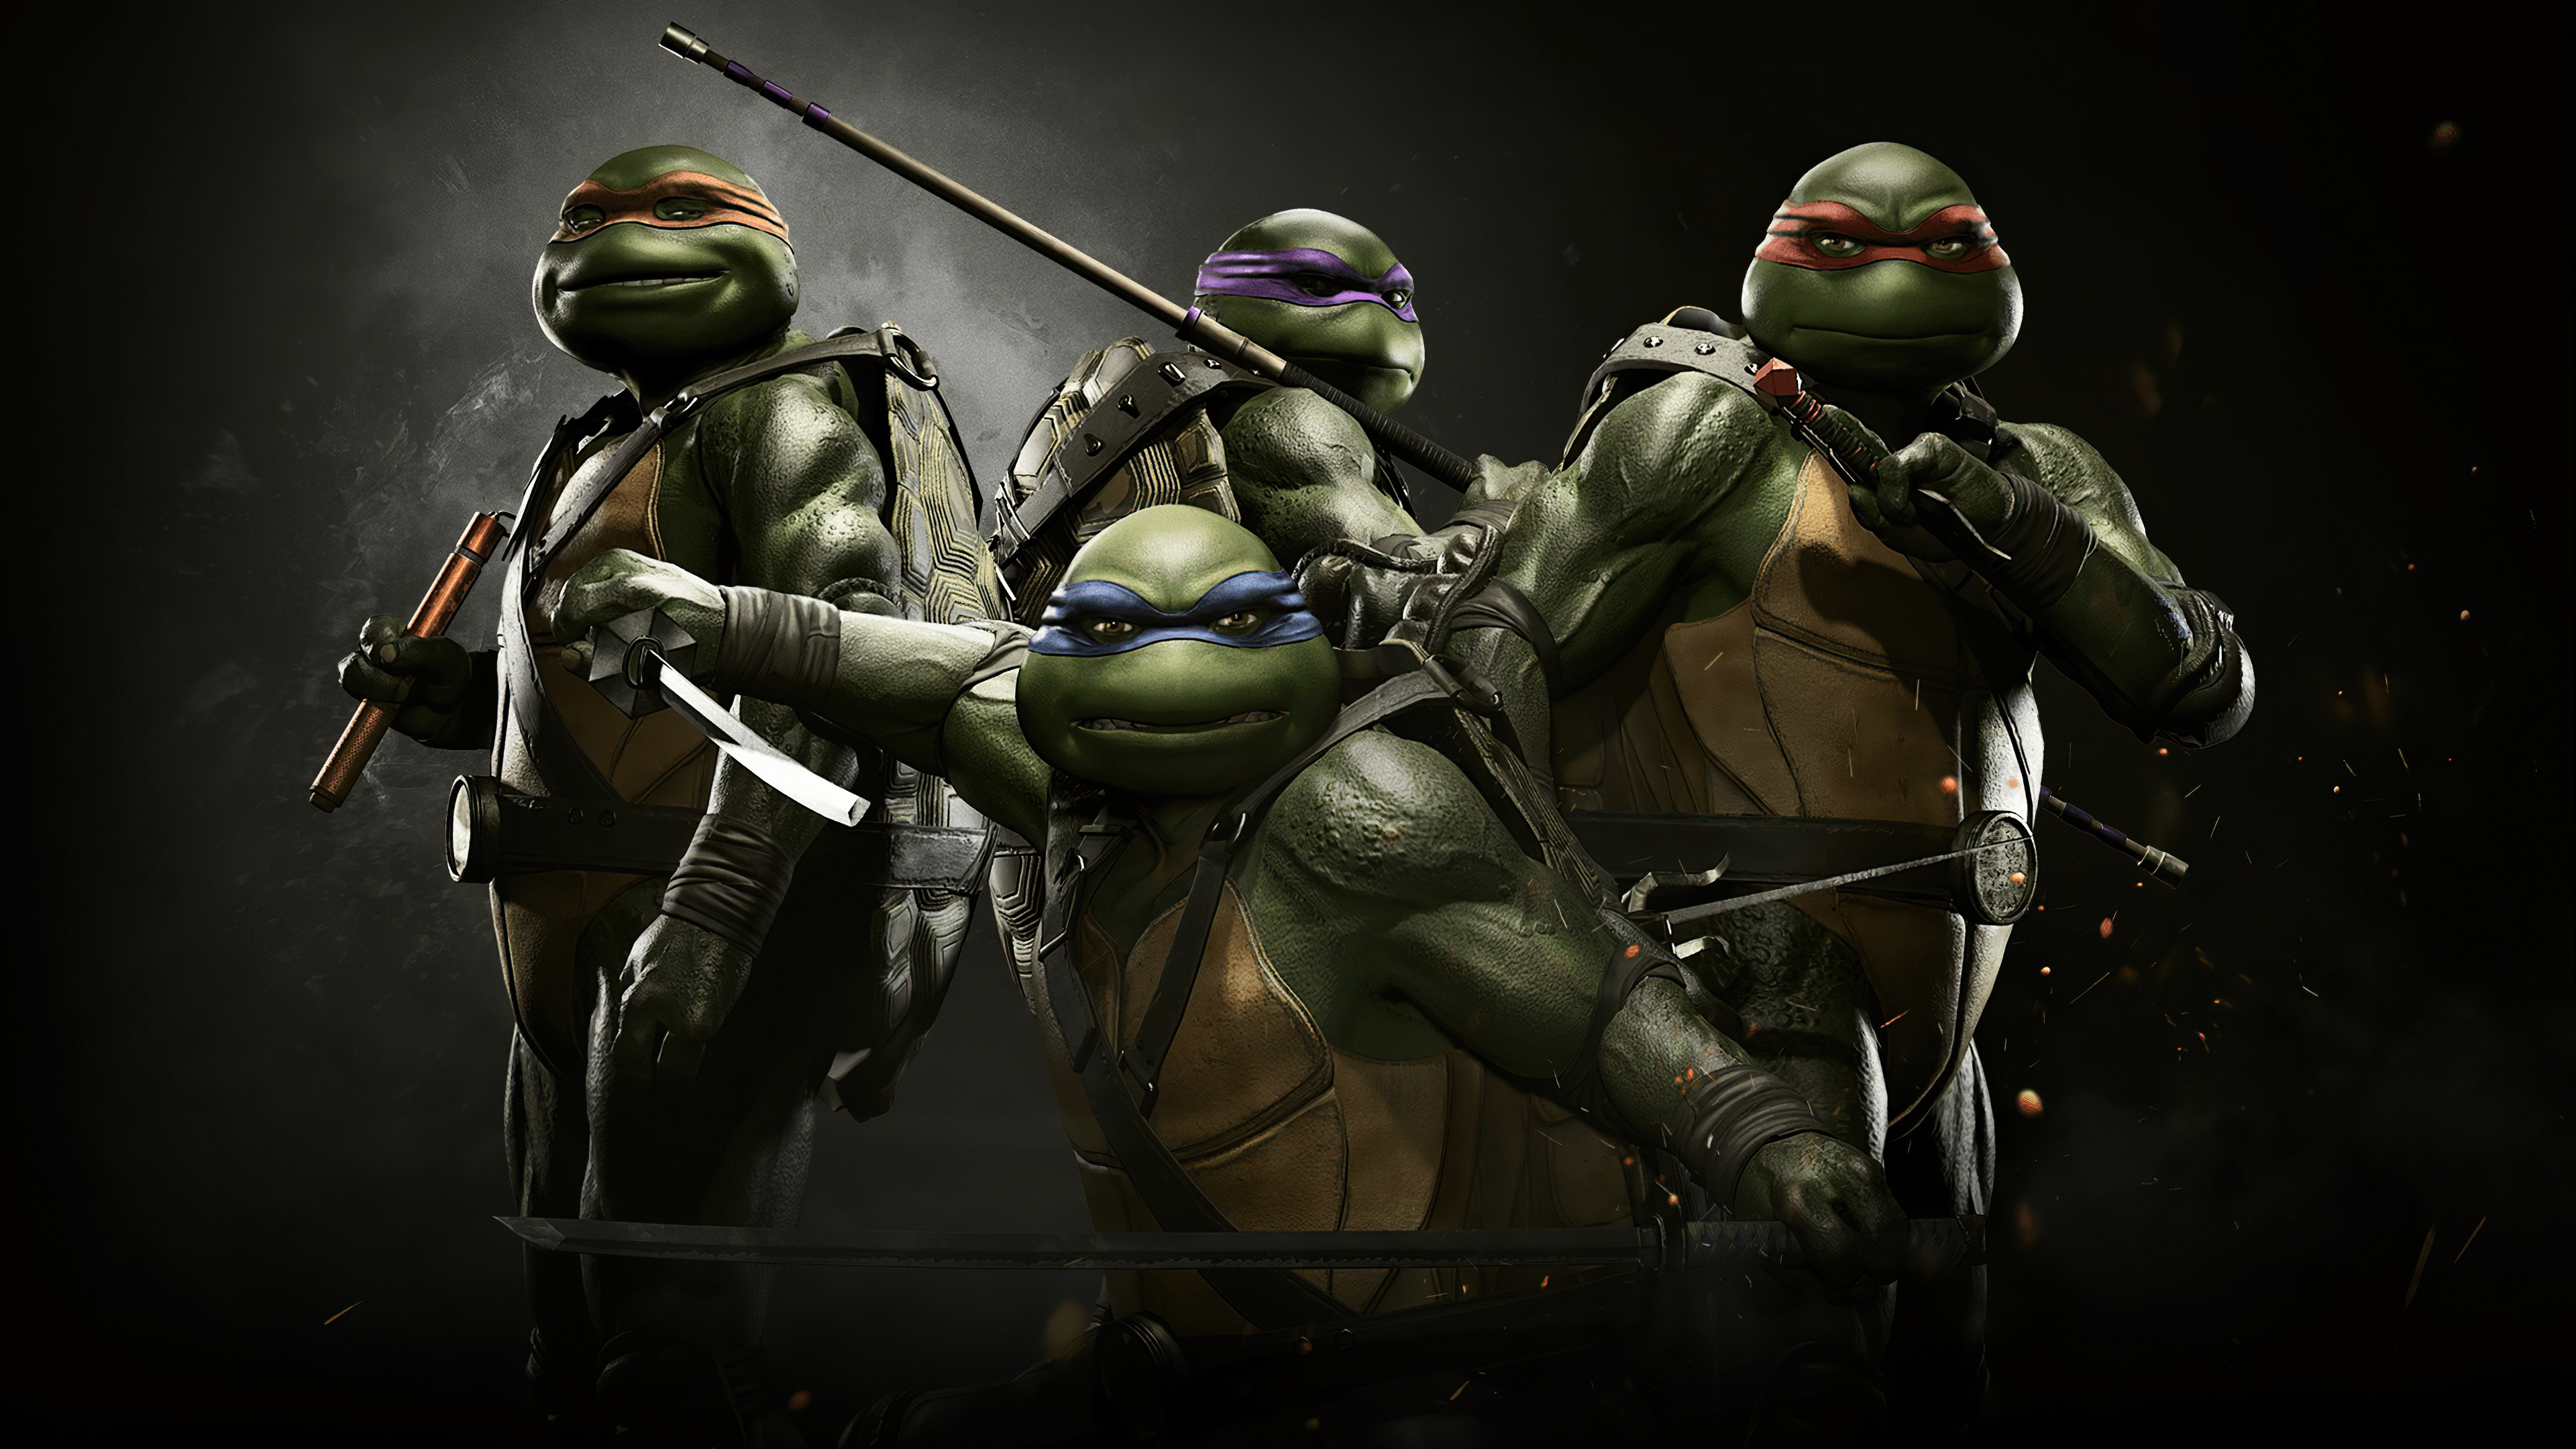 Mutant Ninja Turtles, Injustice 2 game, HD wallpapers, Gaming heroes, 3840x2160 4K Desktop